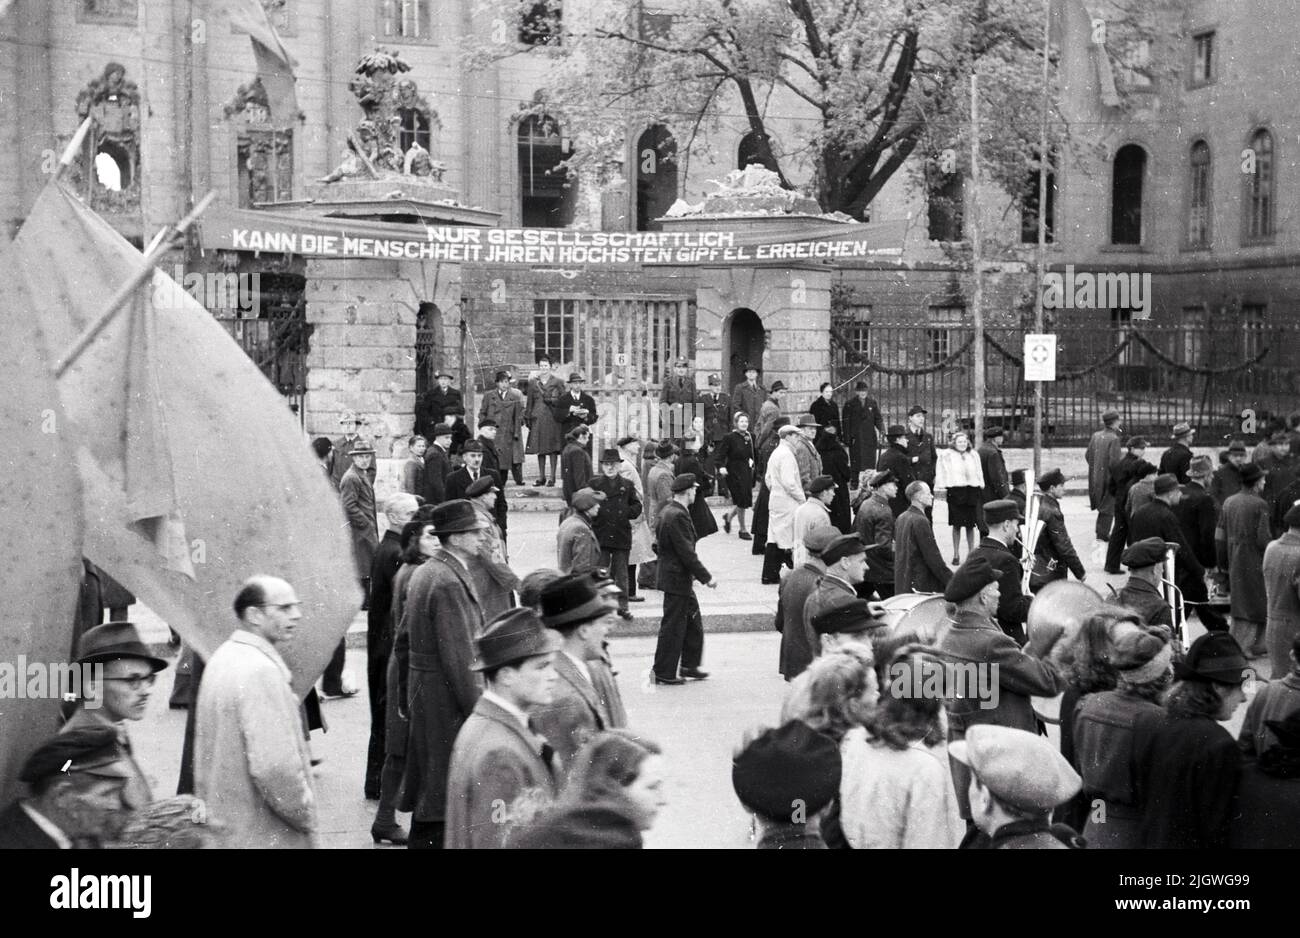 Maifeier Berlin 1947 - Demonstrationszug bei der Feier zum 1. Mai vor der Alten Bibliothek am Bebelplatz in Berlin, Deutschland 1947 - Banner: NUR GESELLSCHAFTLICH KANN DIE MENSCHHEIT IHREN HÖCHSTEN GIPFEL ERREICHEN Foto Stock